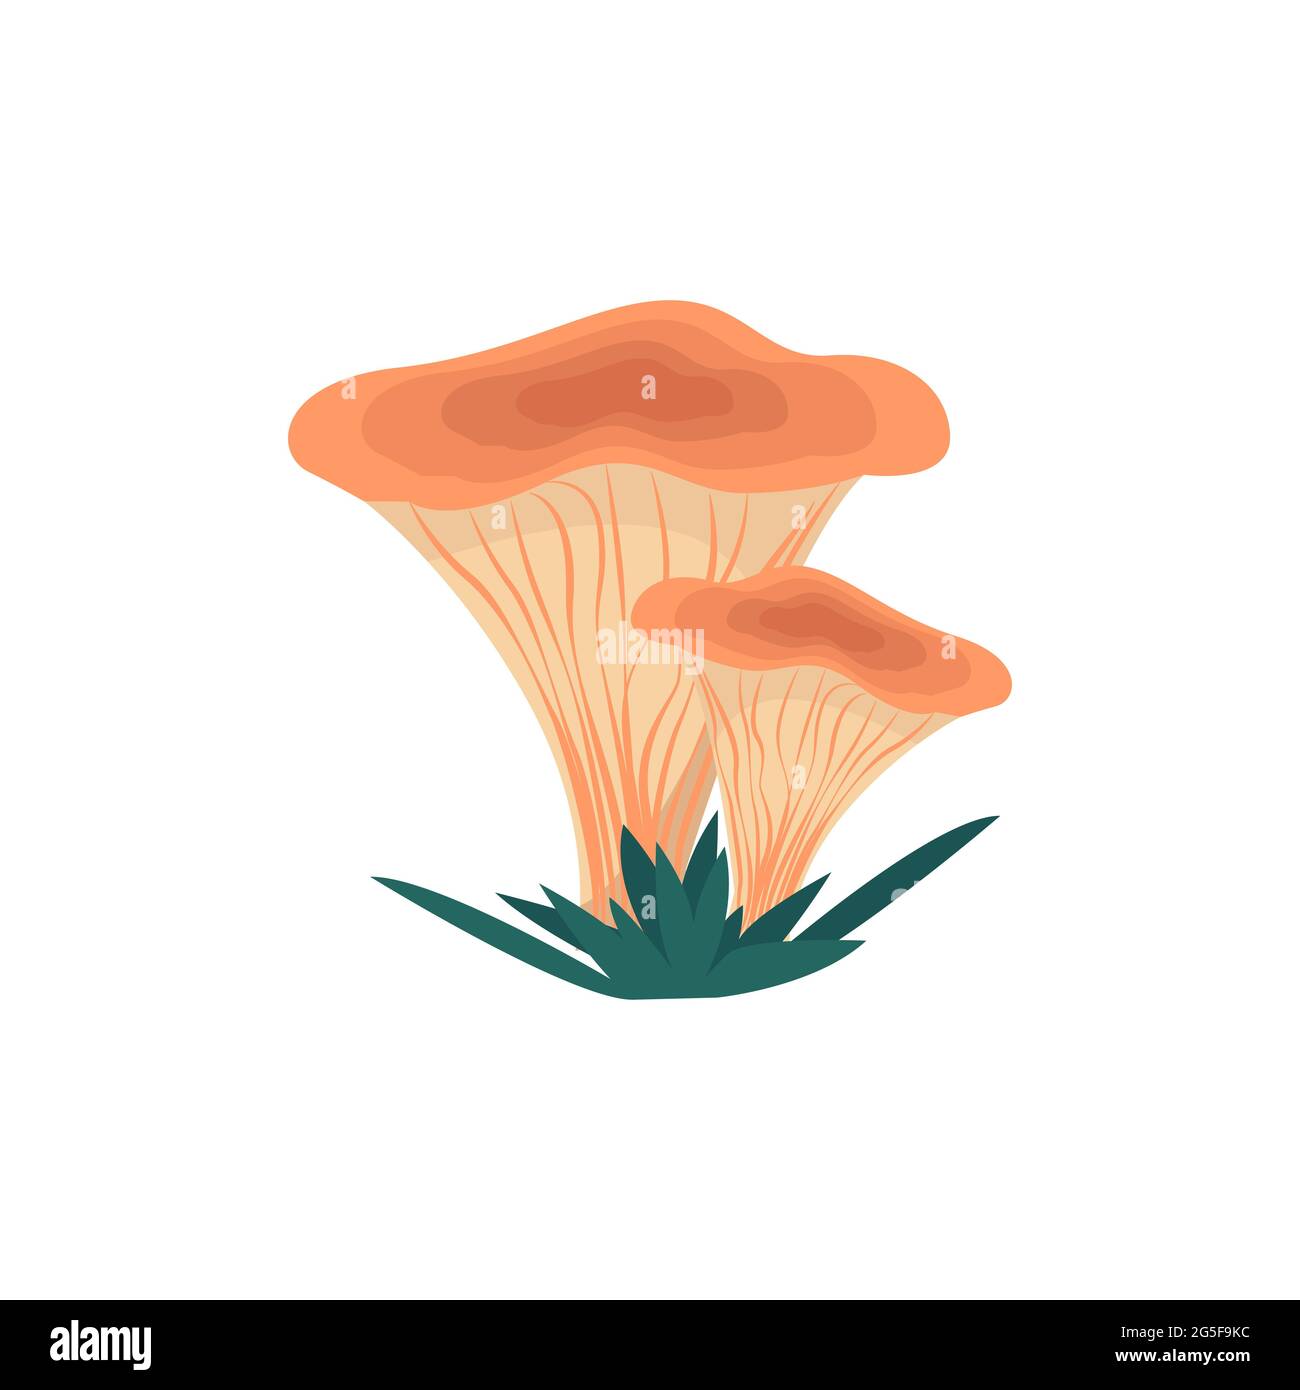 Funghi chanterelle in stile piatto, illustrazione vettoriale di funghi commestibili, isolati Illustrazione Vettoriale